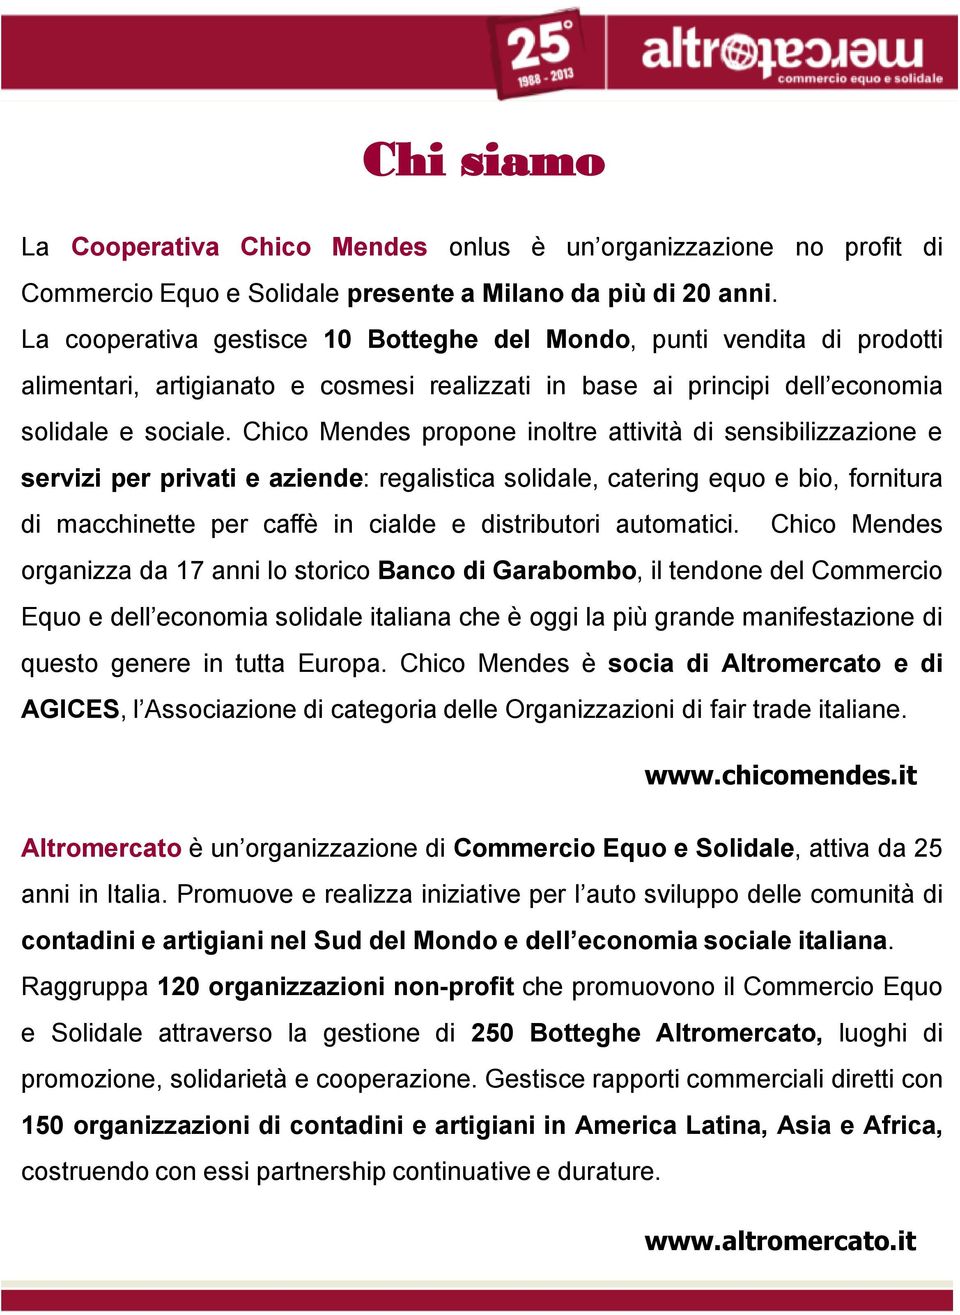 Chico Mendes propone inoltre attività di sensibilizzazione e servizi per privati e aziende: regalistica solidale, catering equo e bio, fornitura di macchinette per caffè in cialde e distributori